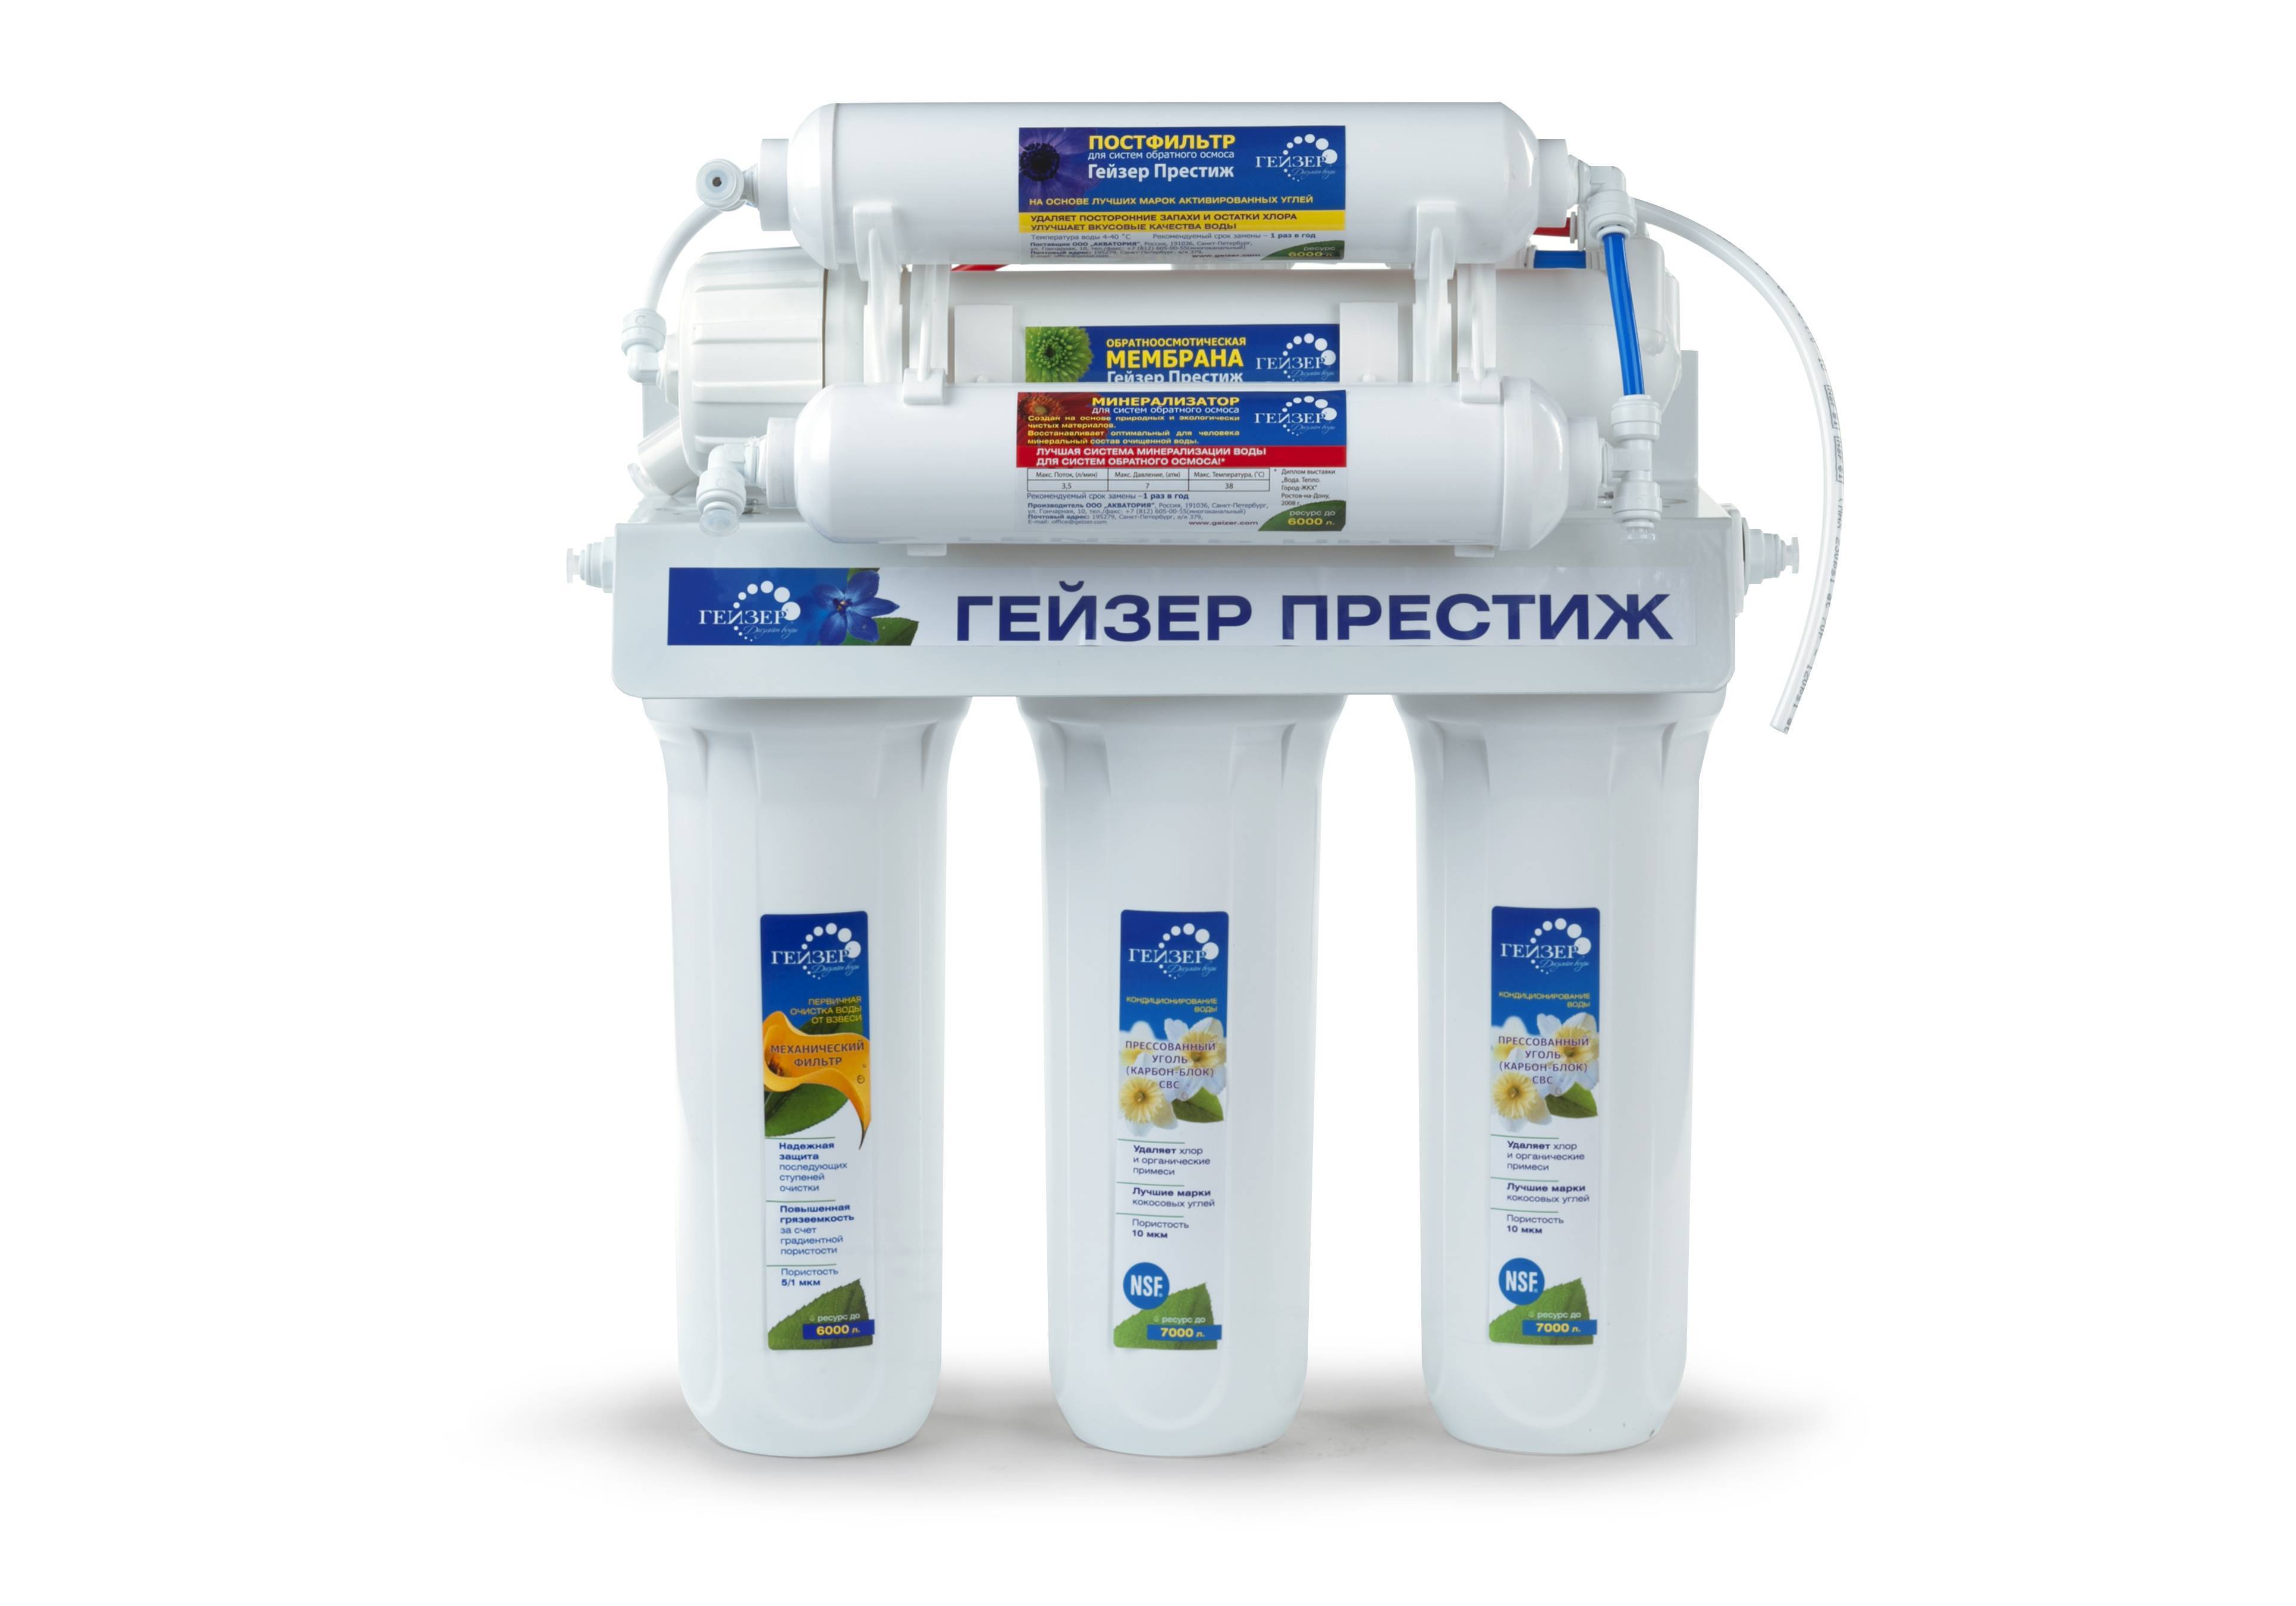 Система фильтрации воды для дома: виды фильтров, монтаж